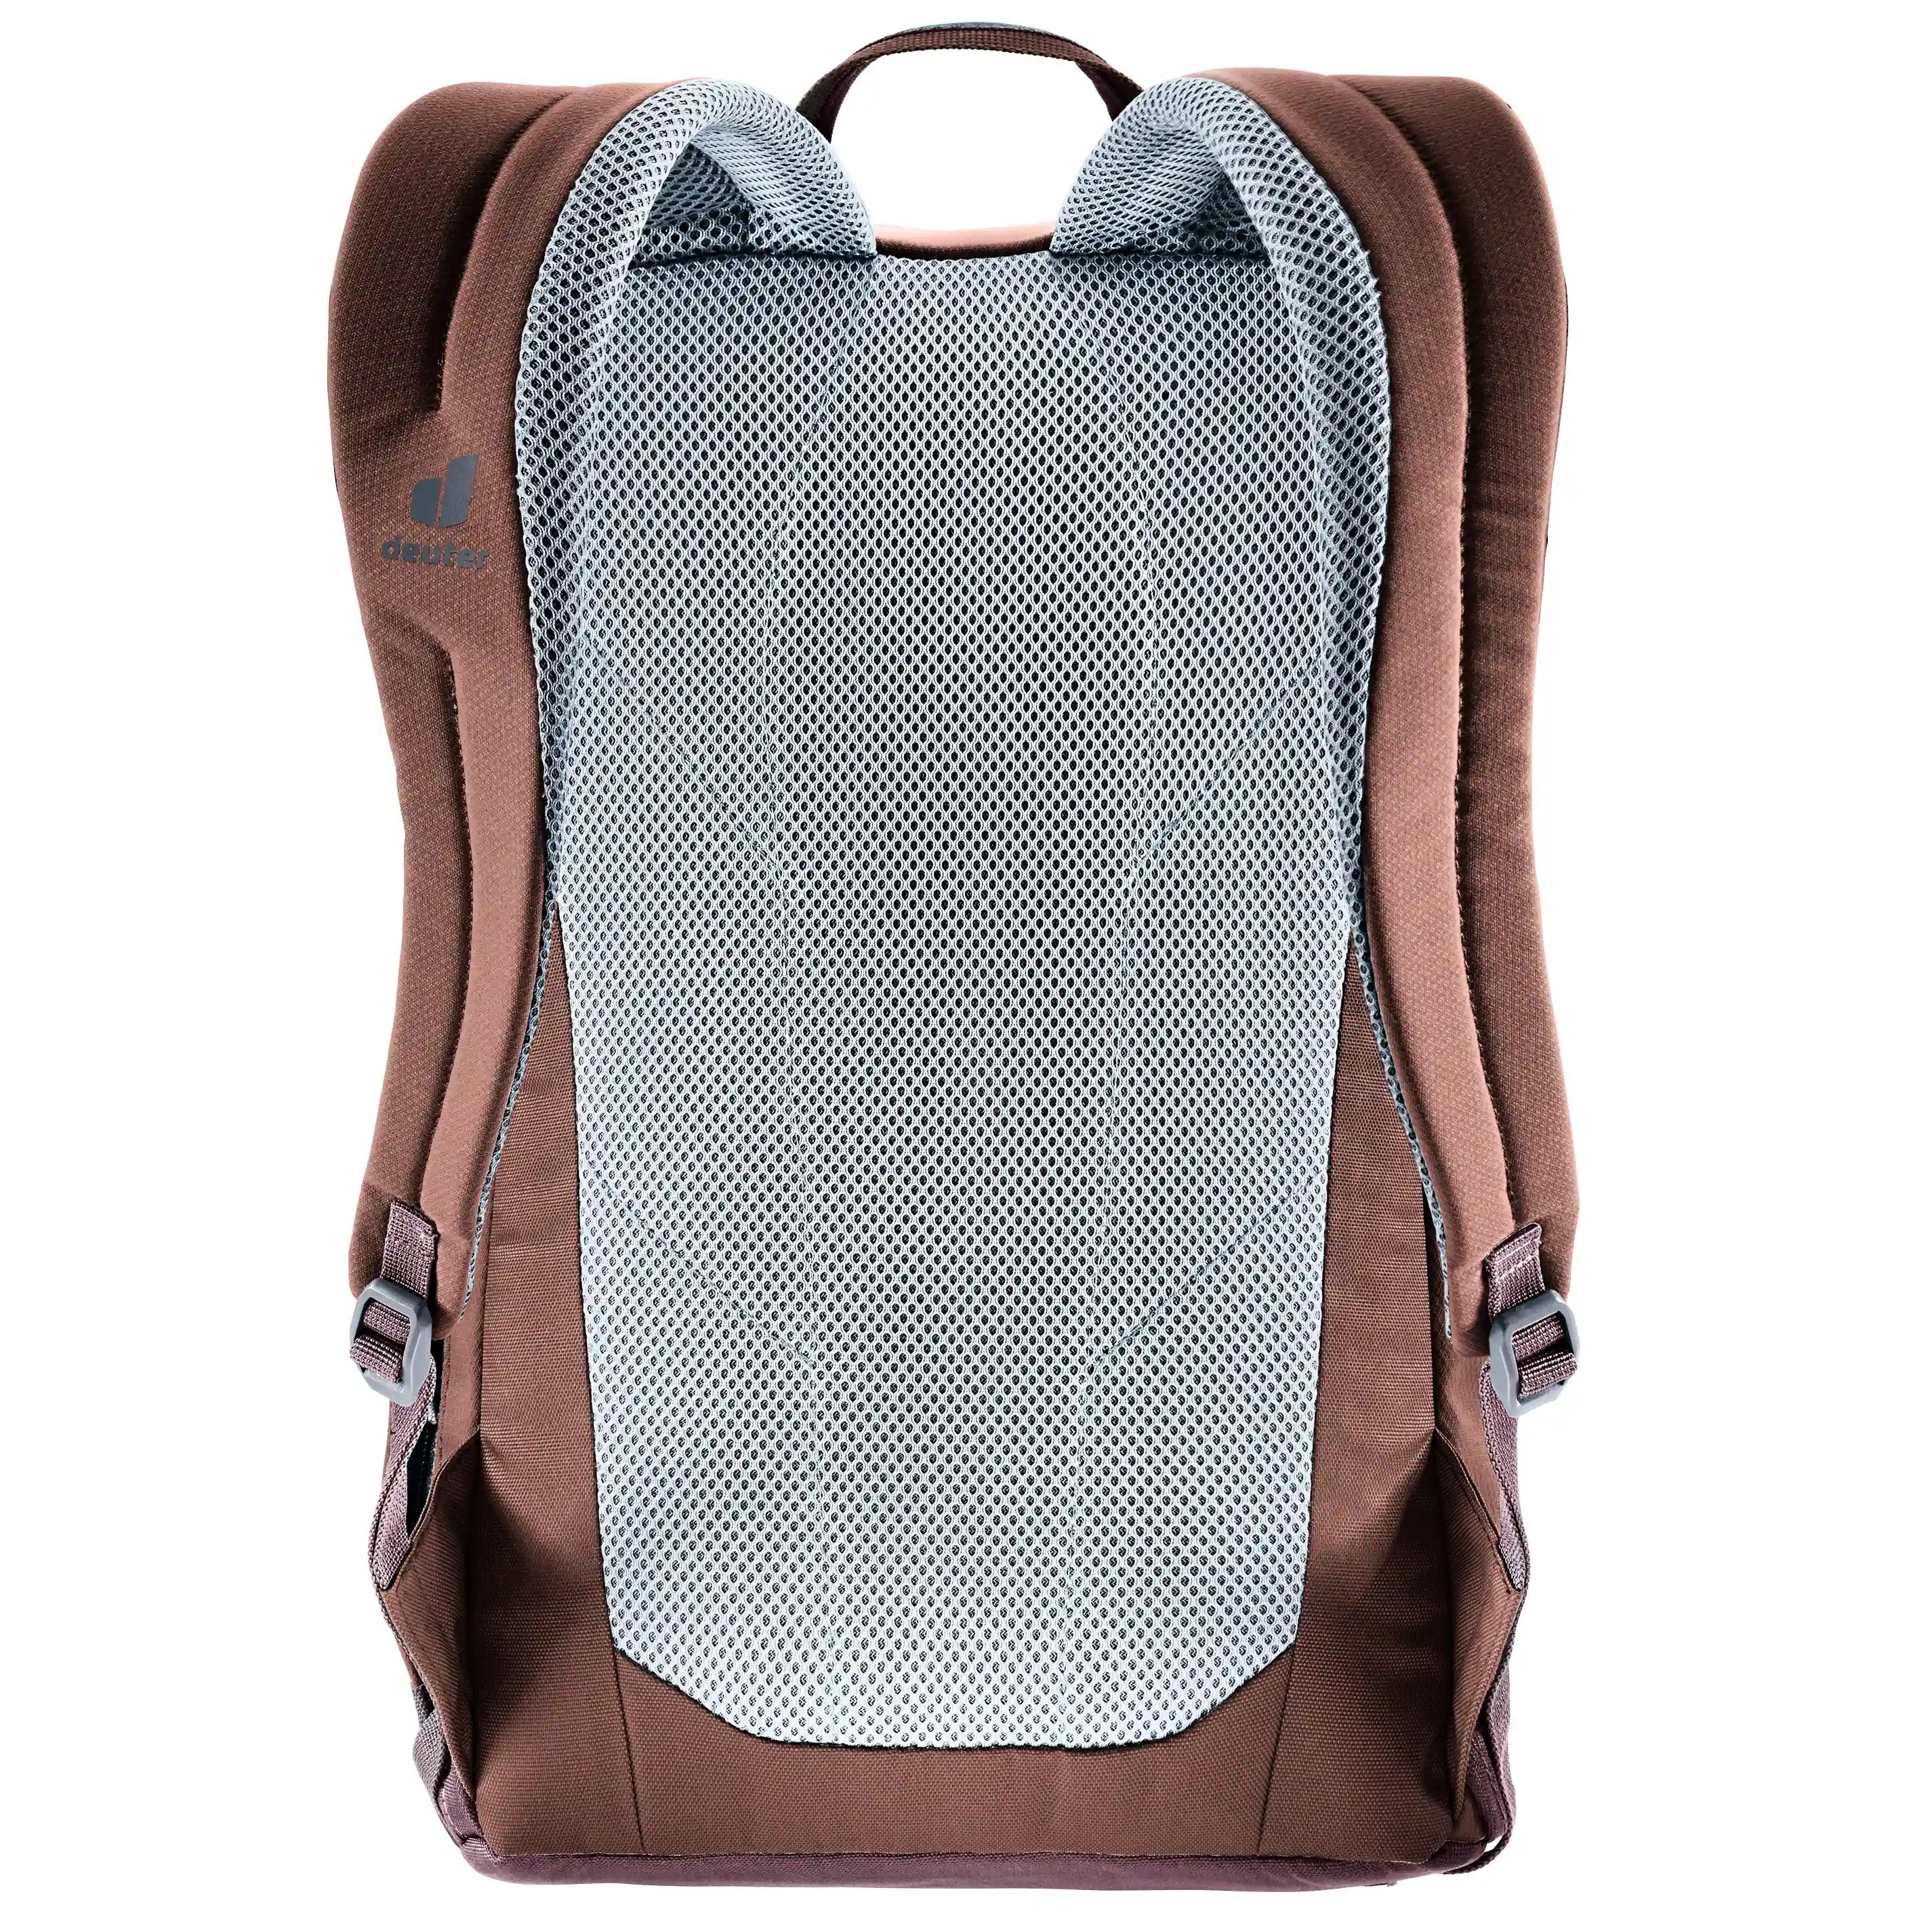 Deuter Gogo Lifestyle Backpack 46 cm - Bone Desert